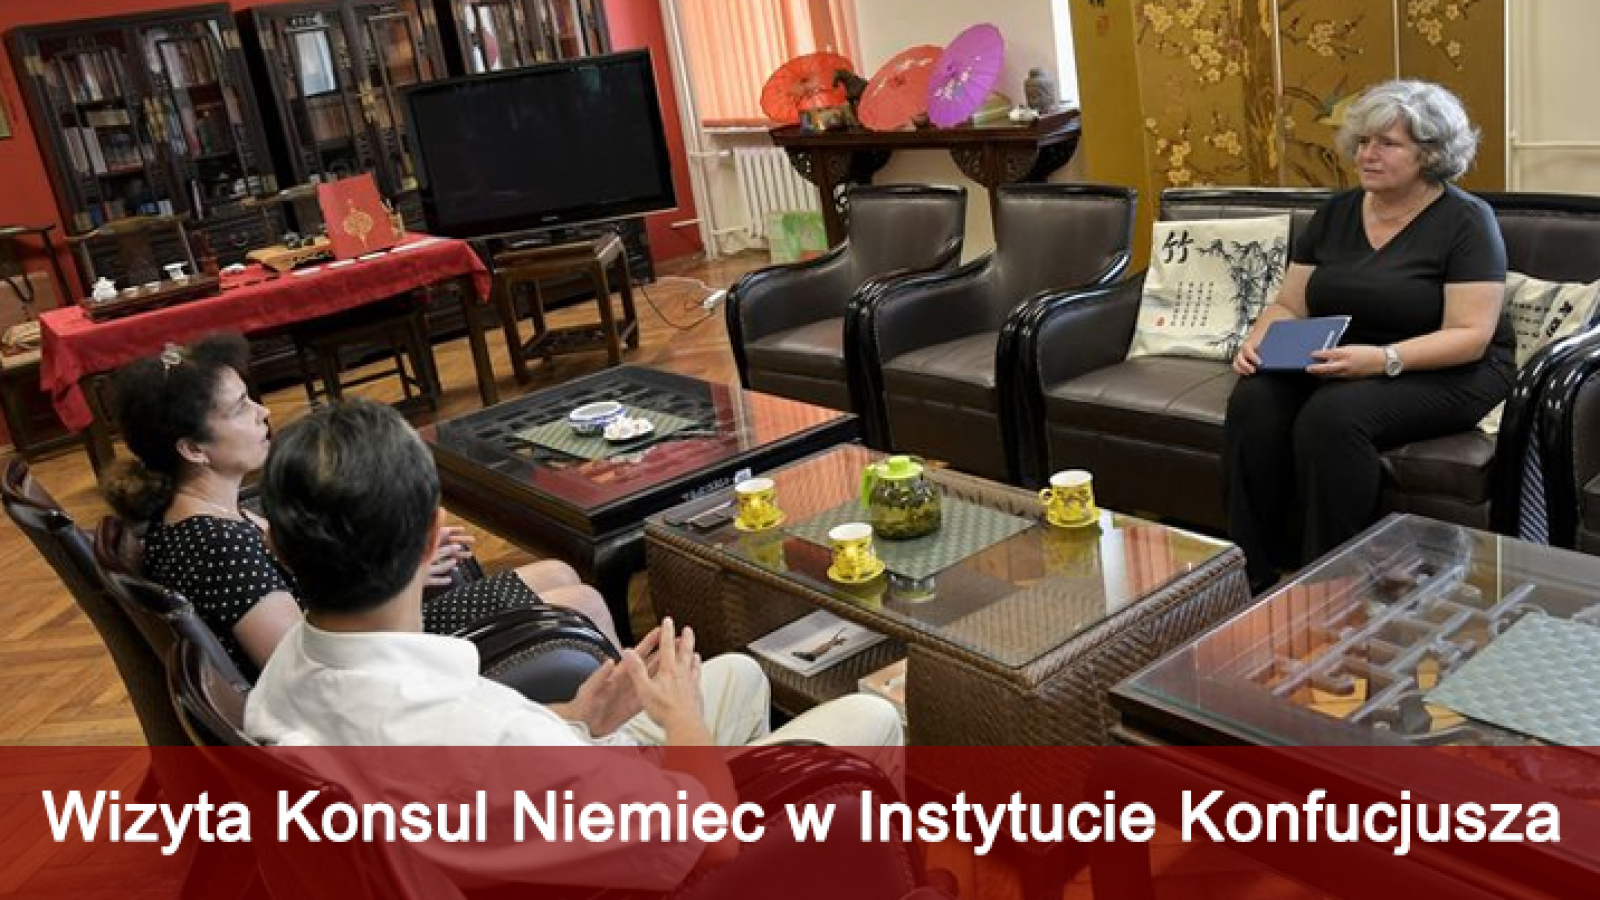 Wizyta Konsul Niemiec w Instytucie Konfucjusza